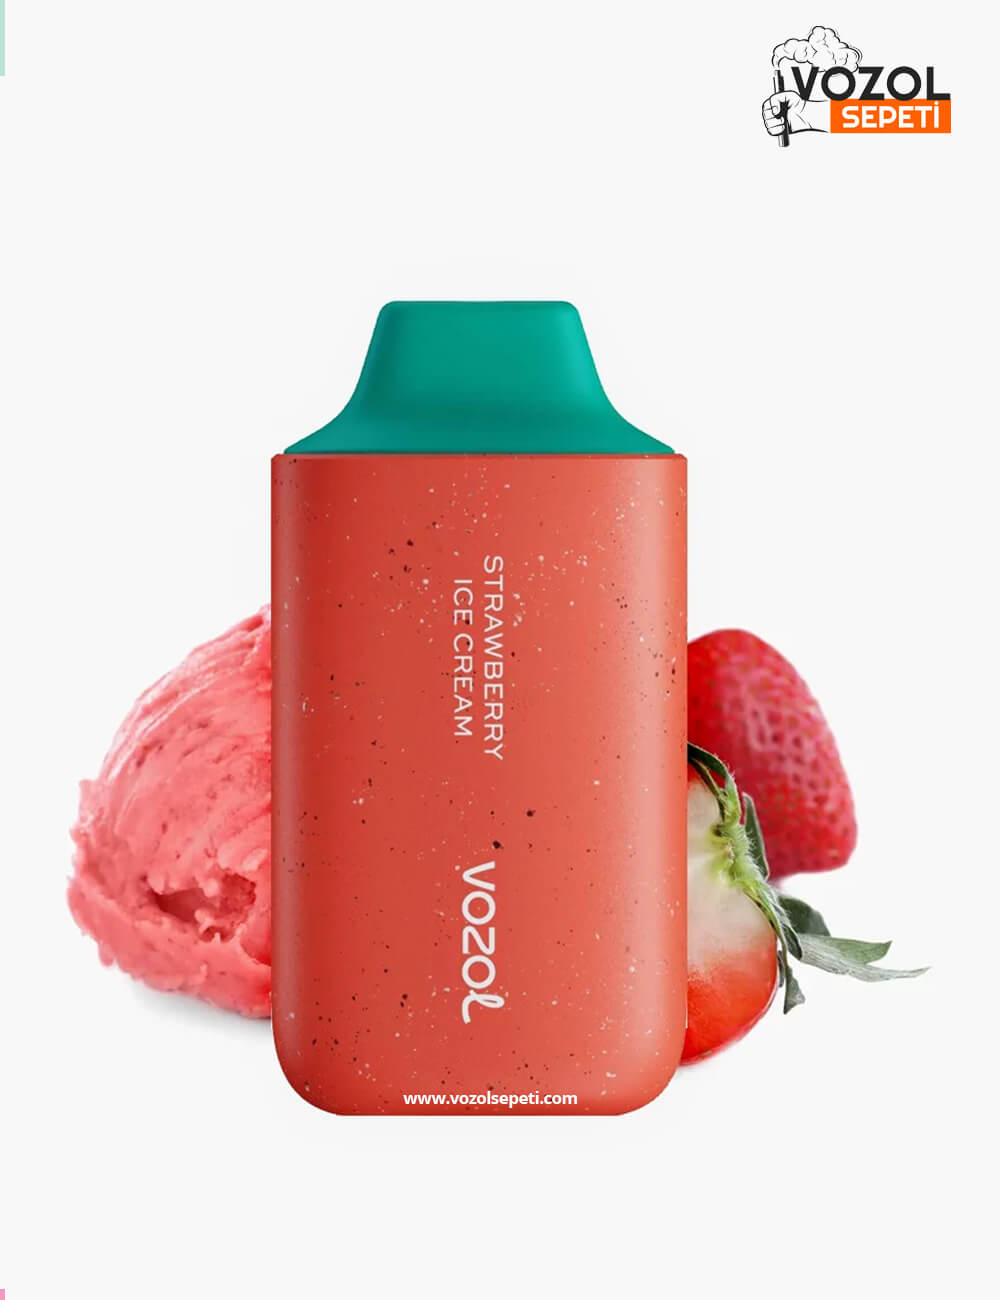 Vozol 6000 - Strawberry ice Cream